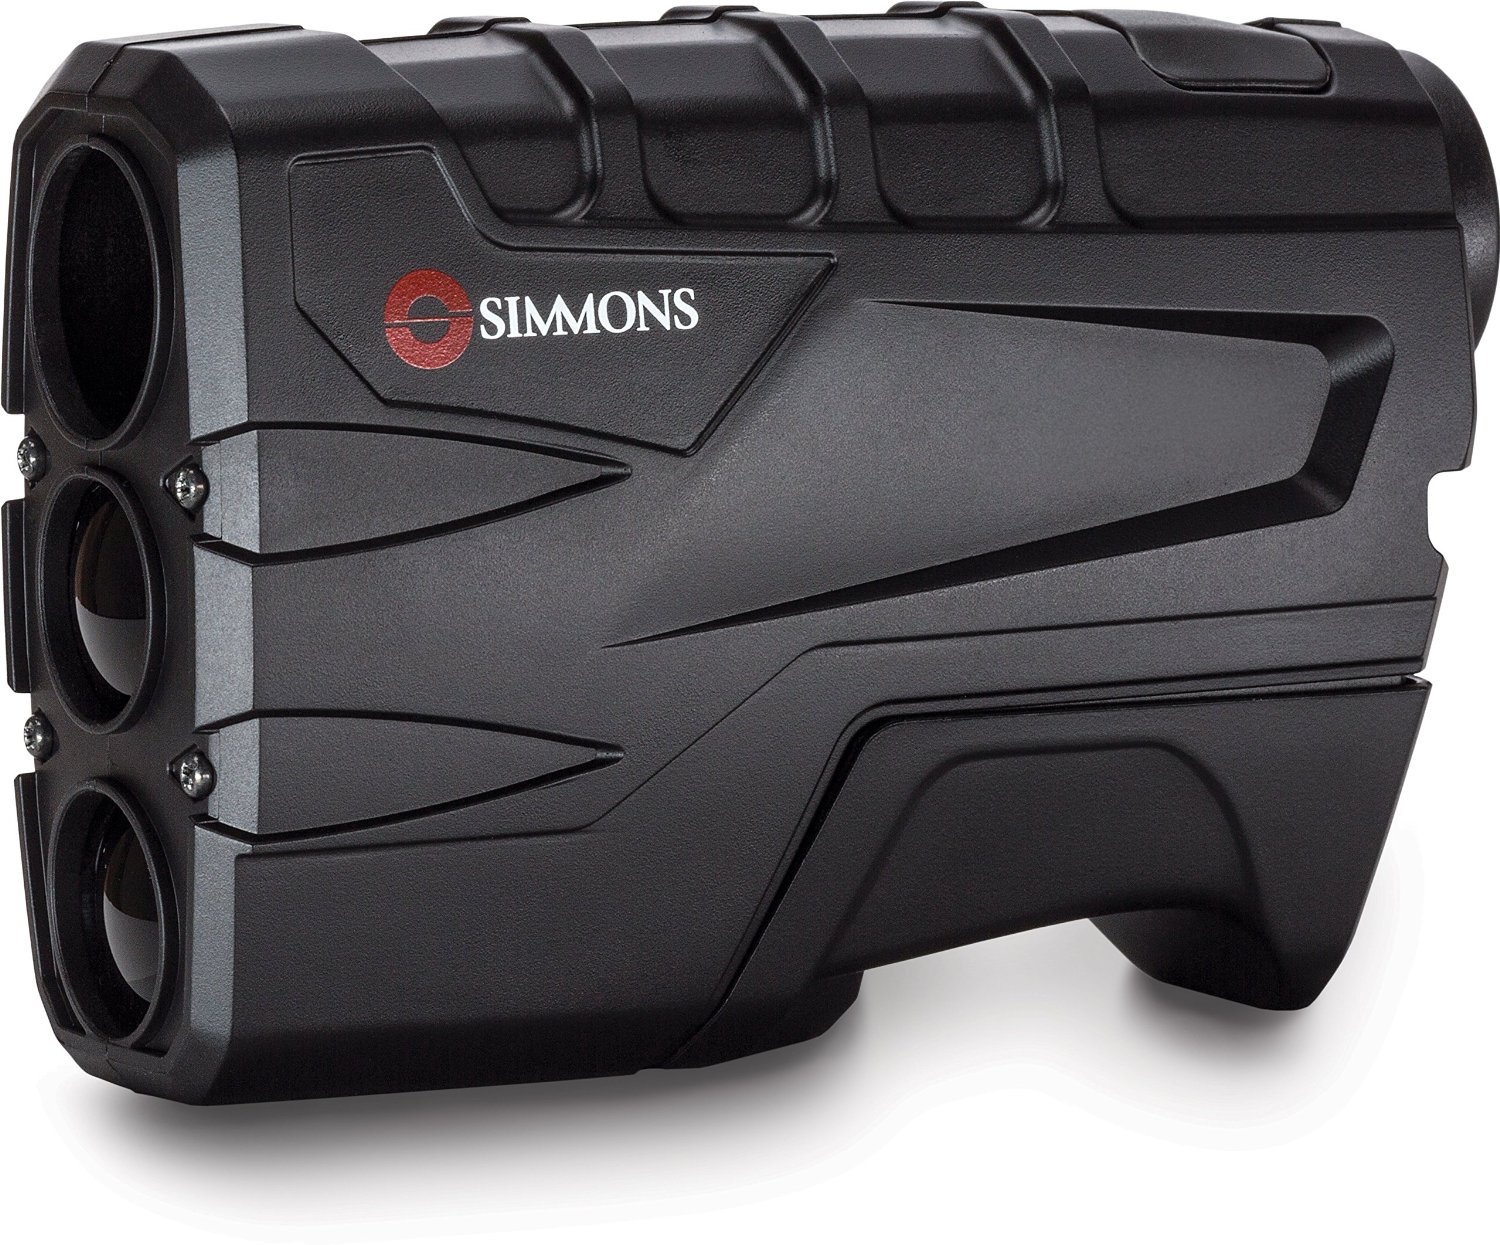 Save on the Simmons Volt 600 Laser Rangefinder – Just $64.99!